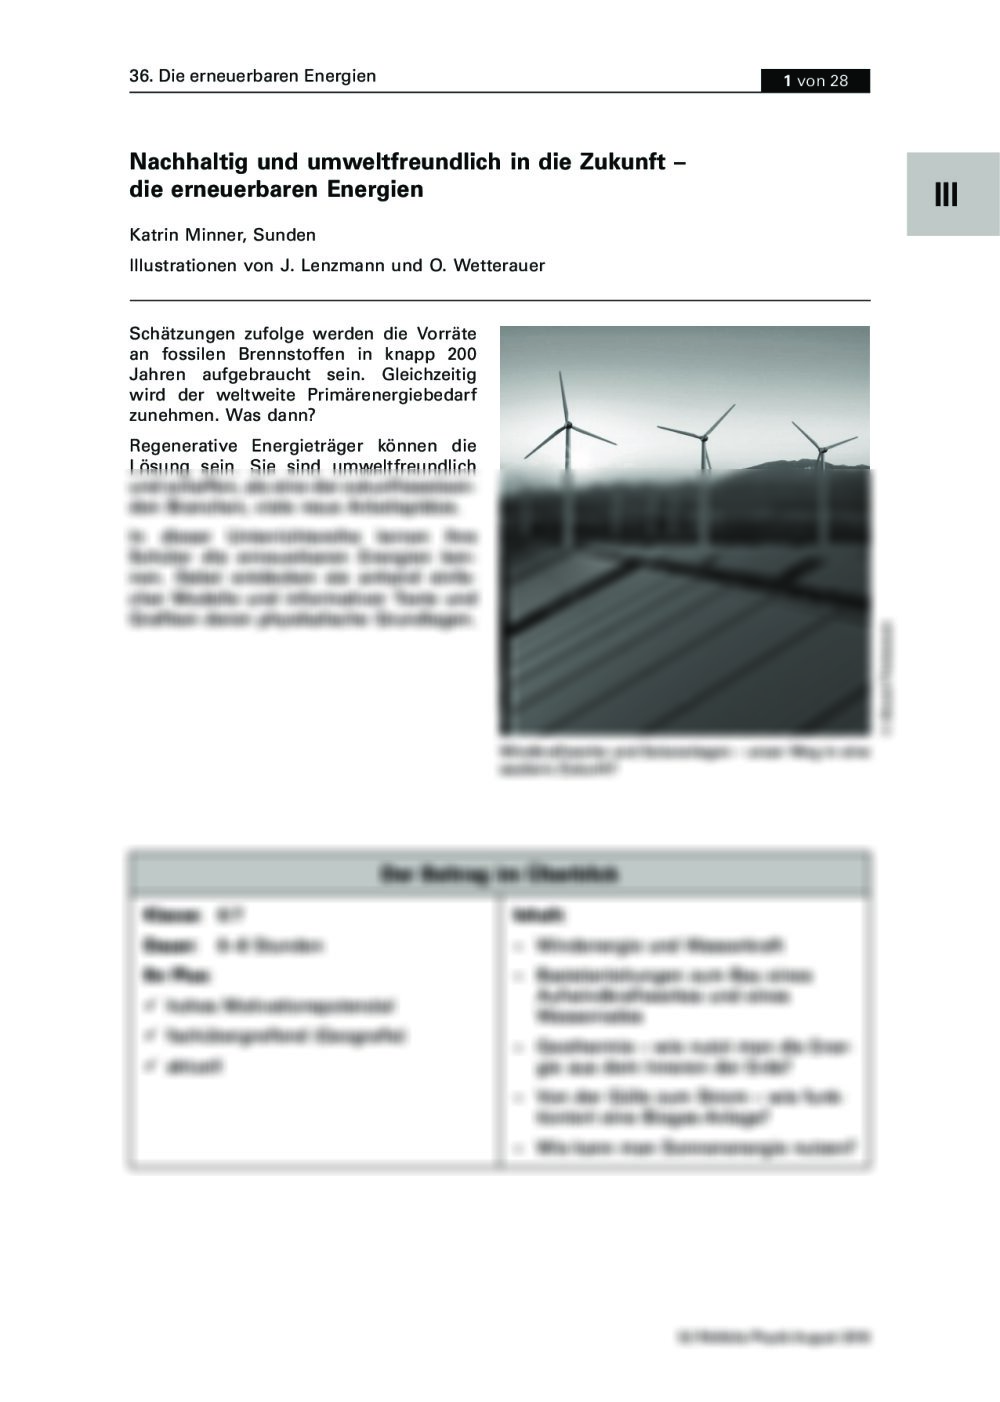 Erneuerbare Energien als Konzept für die Zukunft - Seite 1